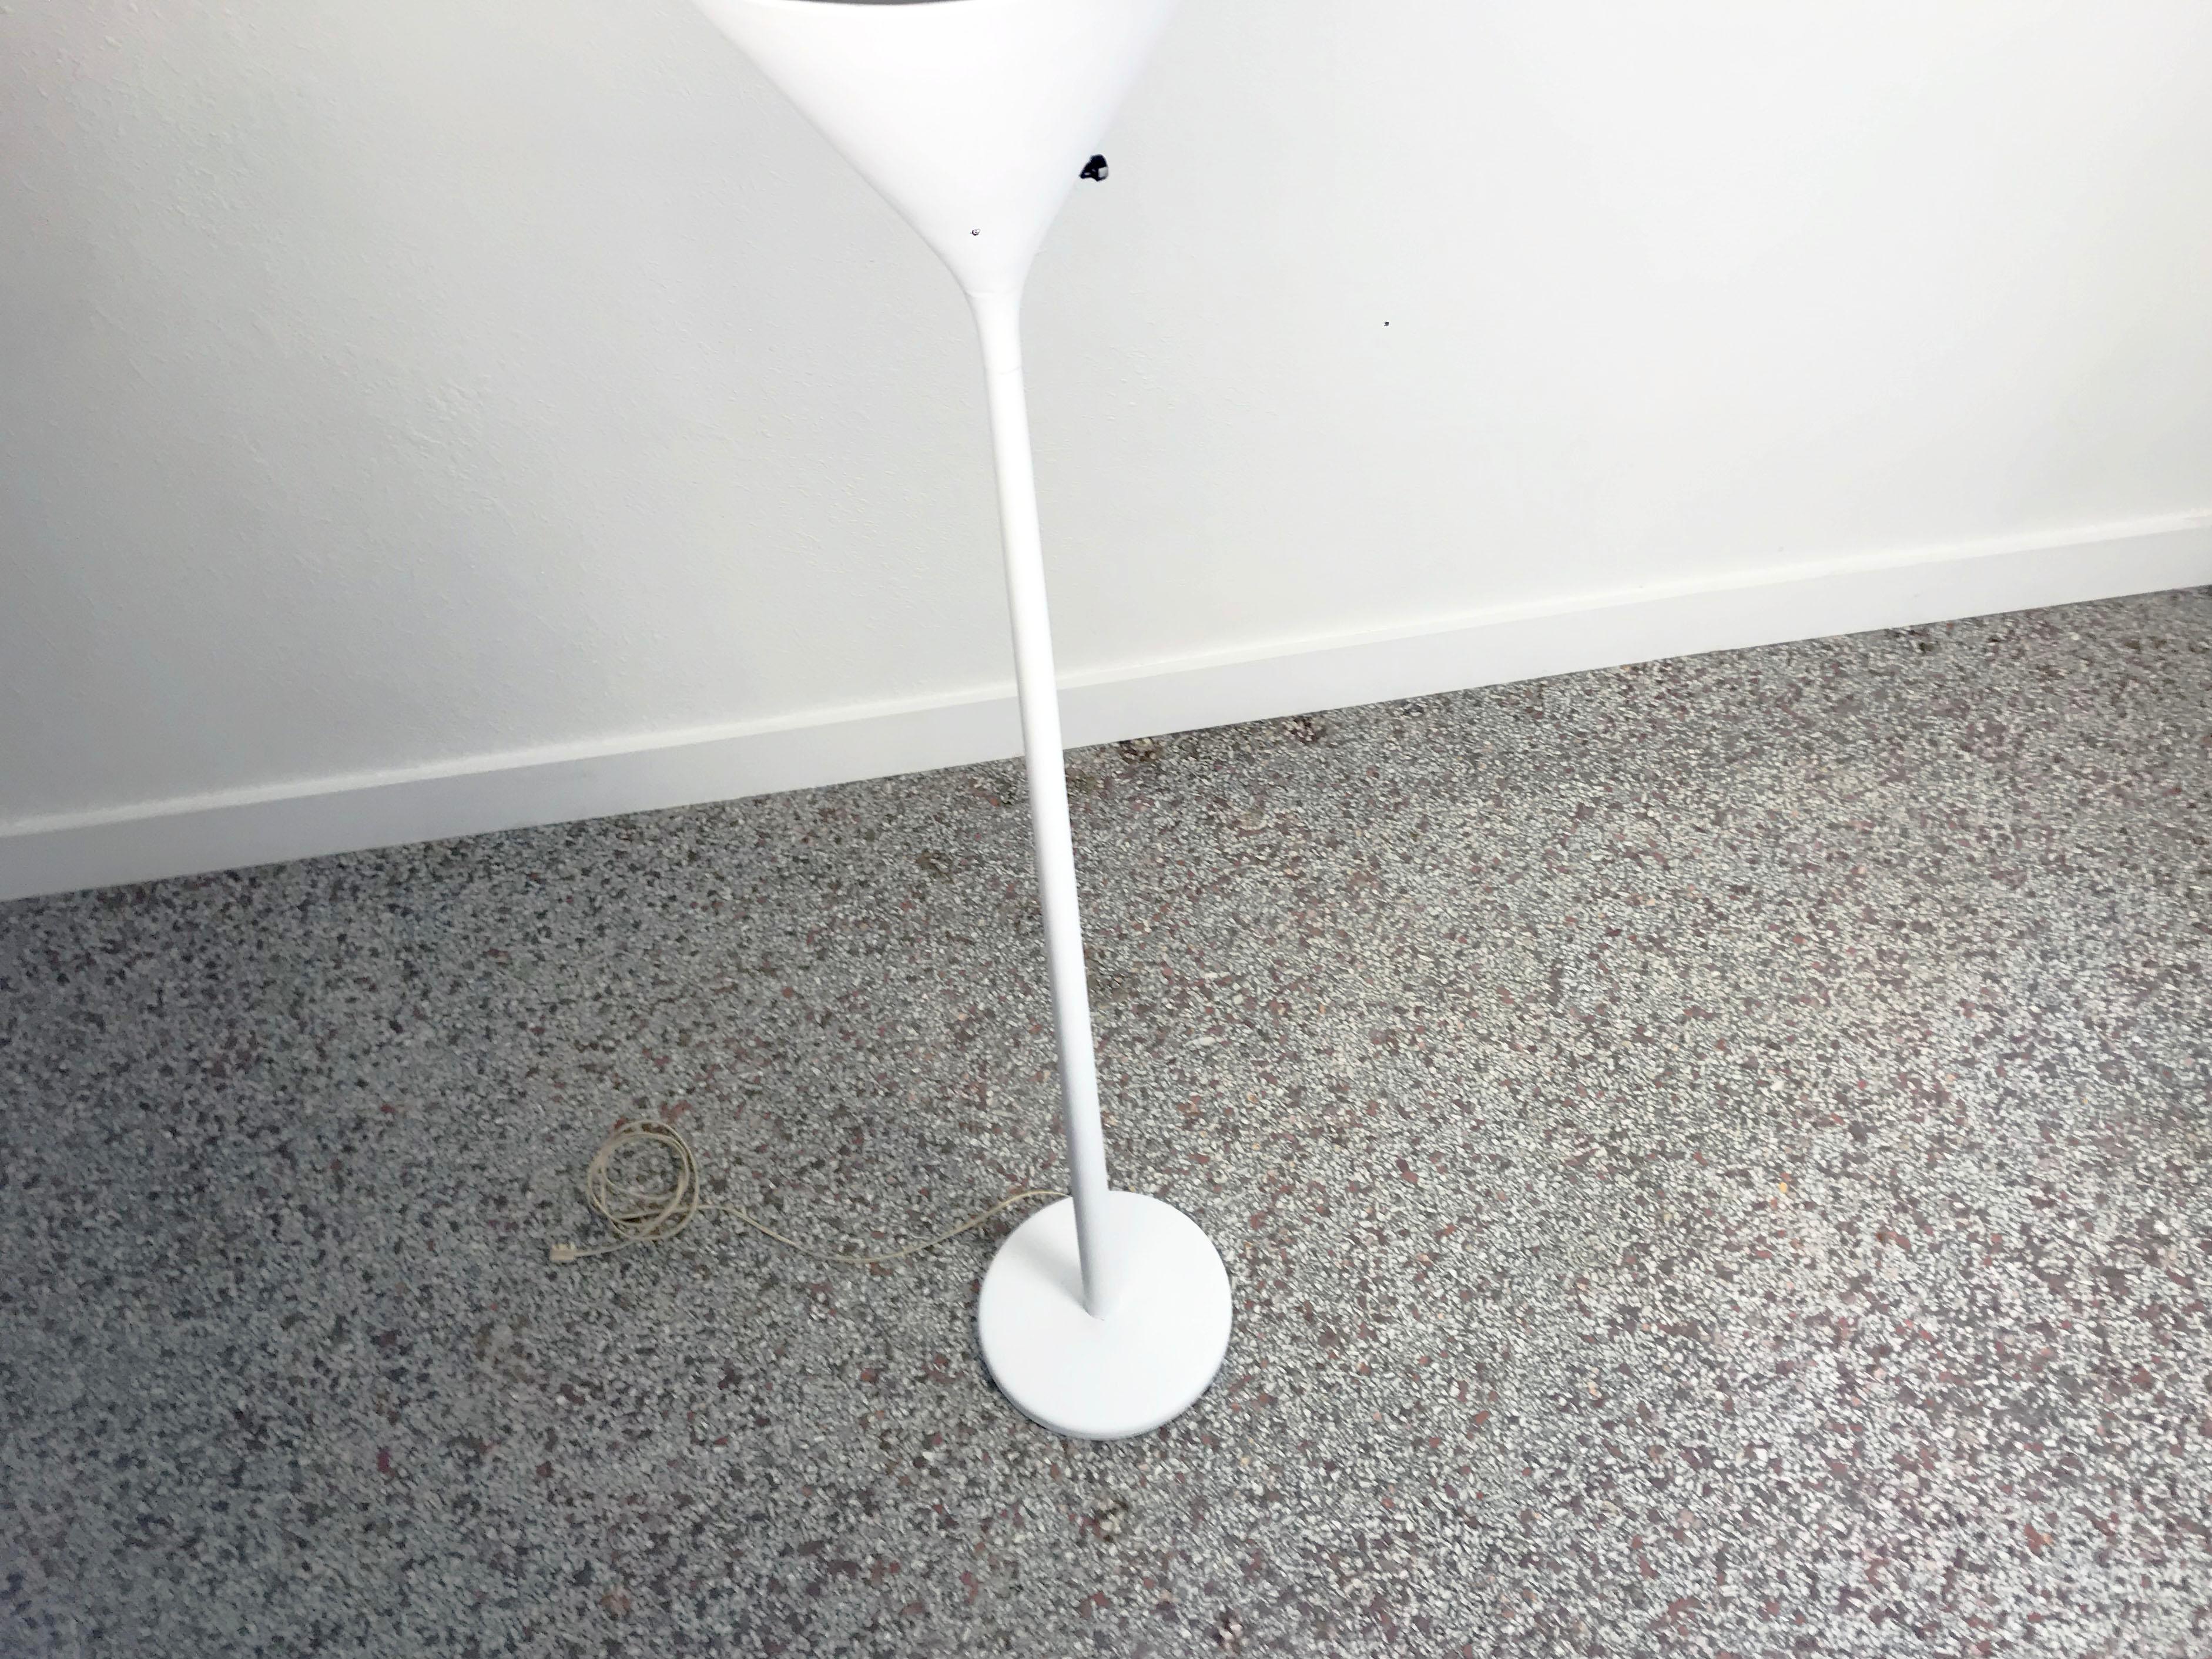 Von der Lancken & Lundquist Floor Lamp for Nessen Studios 2